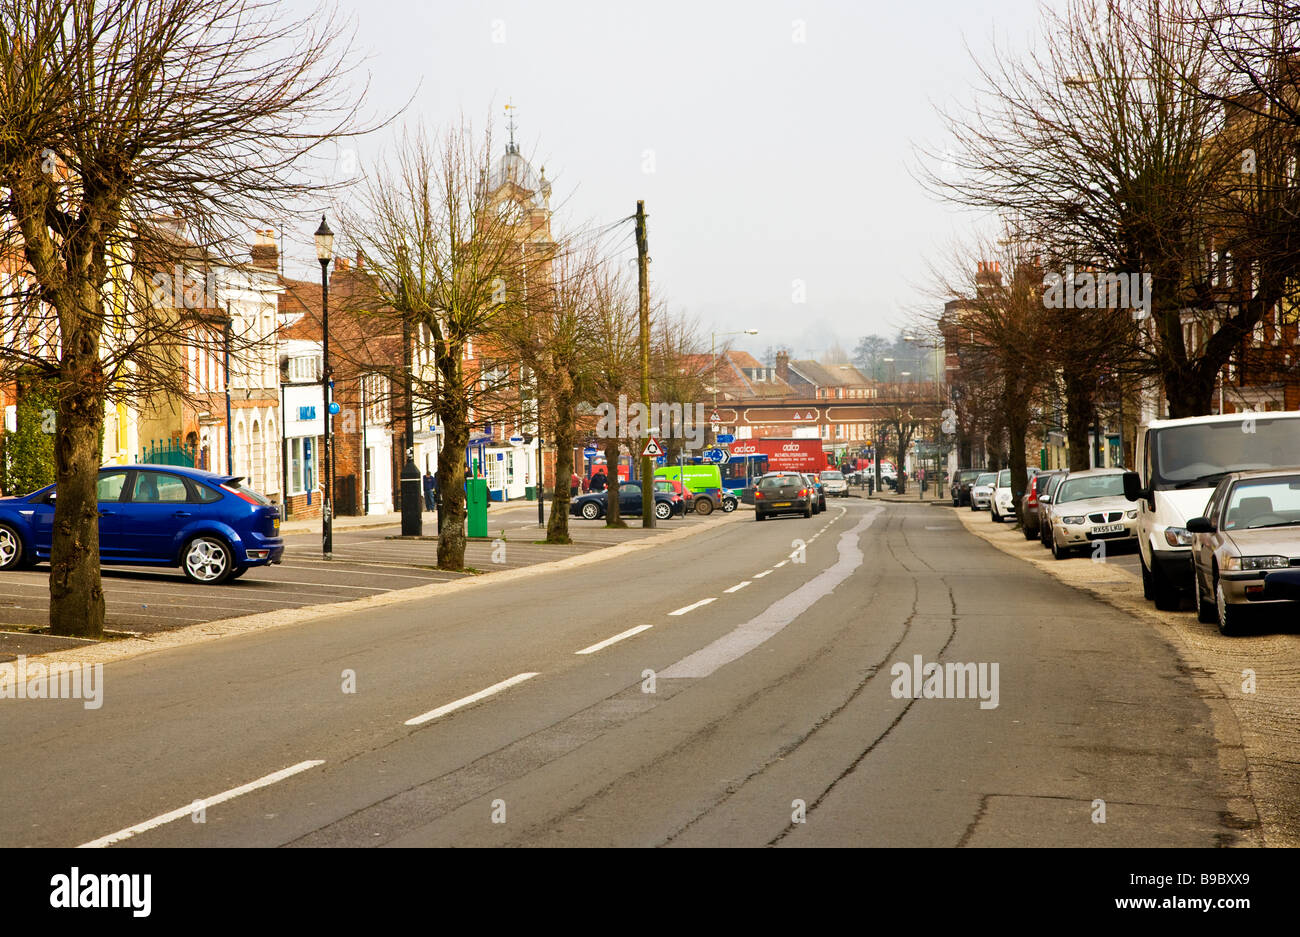 Afficher le long de la rue principale à Hungerford Berkshire England UK avec l'hôtel de ville dans la distance Banque D'Images